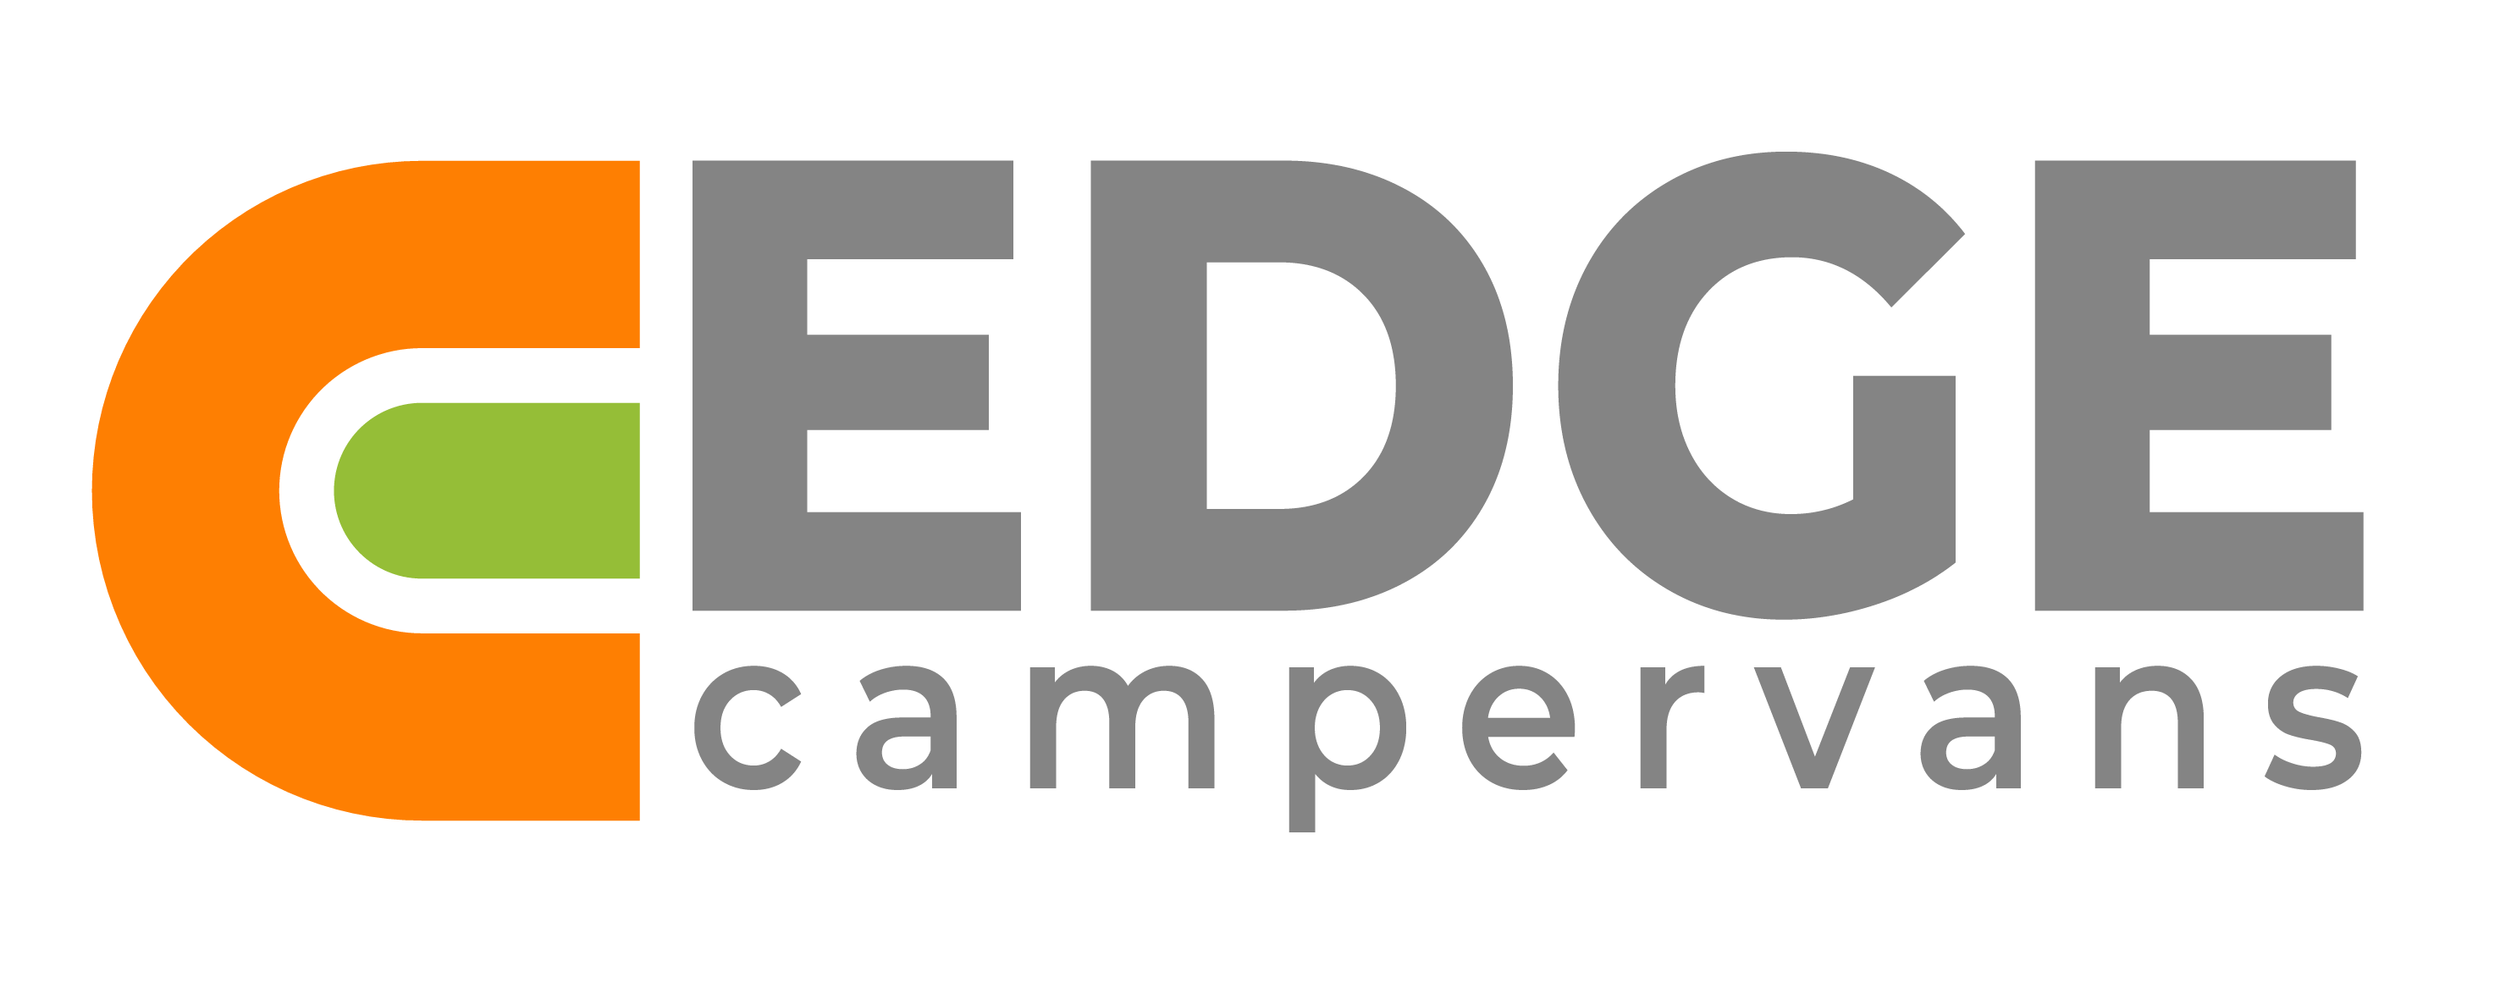 www.edgecampervans.co.uk